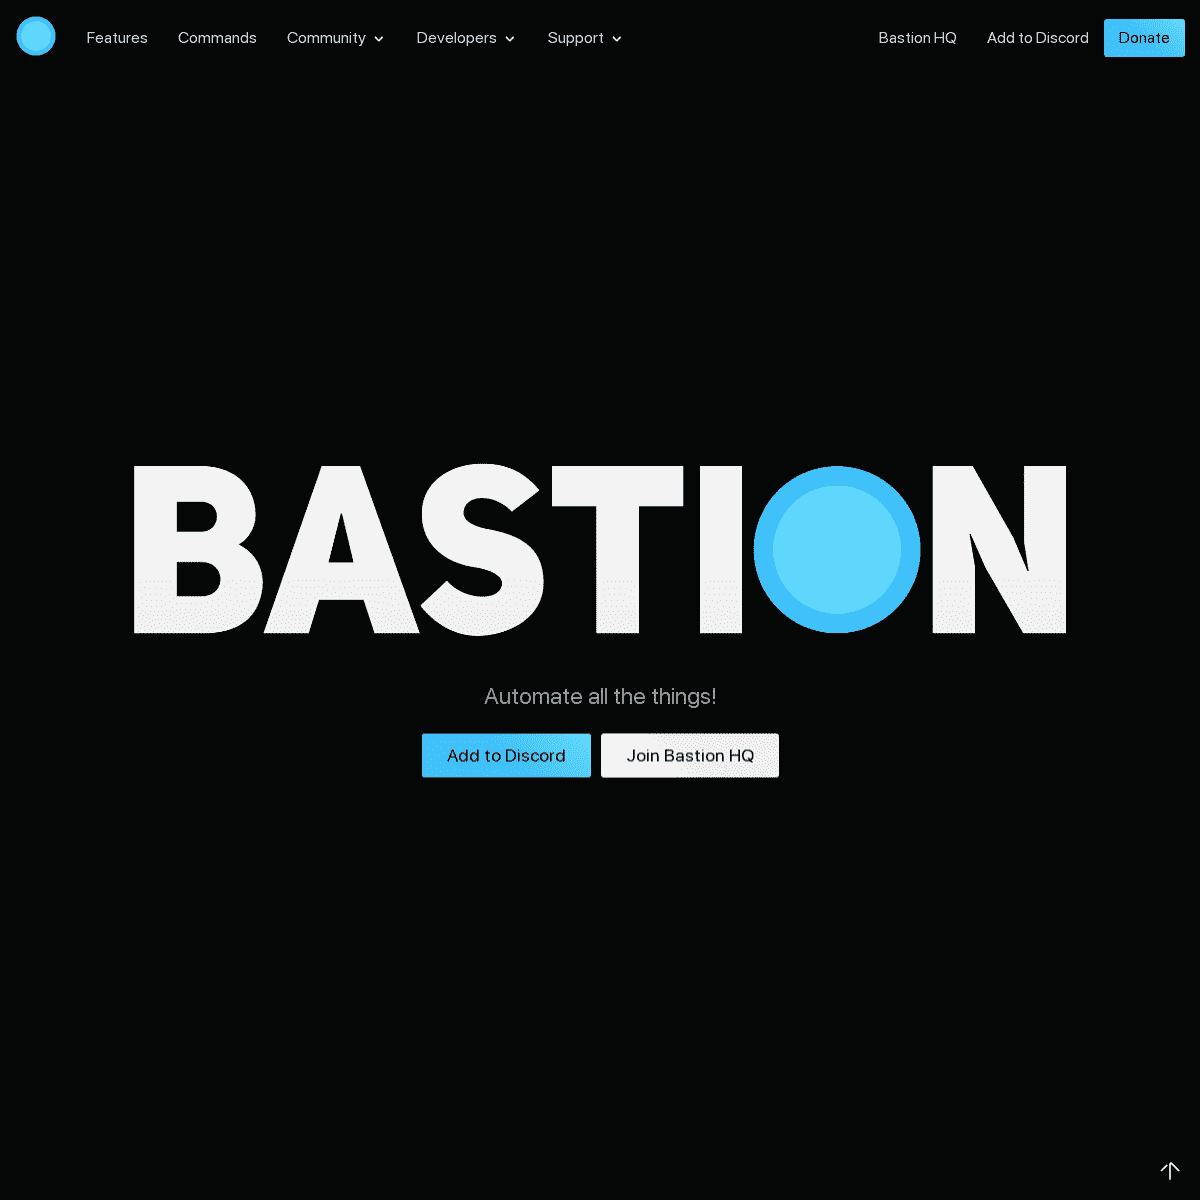 A complete backup of bastionbot.org